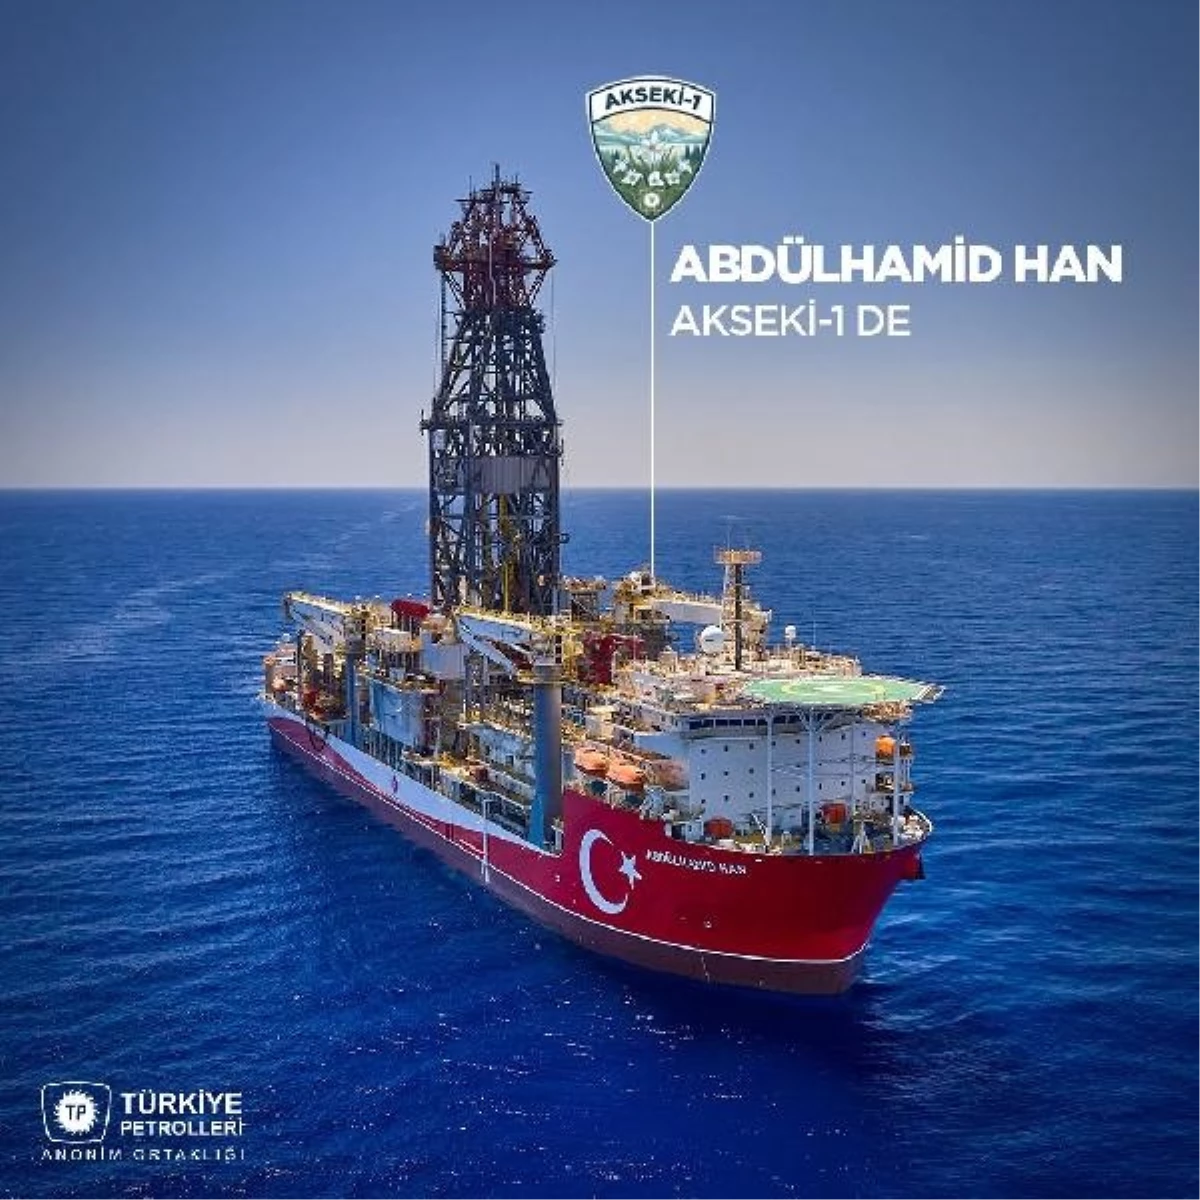 Türkiye Petrolleri, Abdülhamid Han Sondaj Gemisi ile Akseki-1 Kuyusunda Sondaja Başlıyor